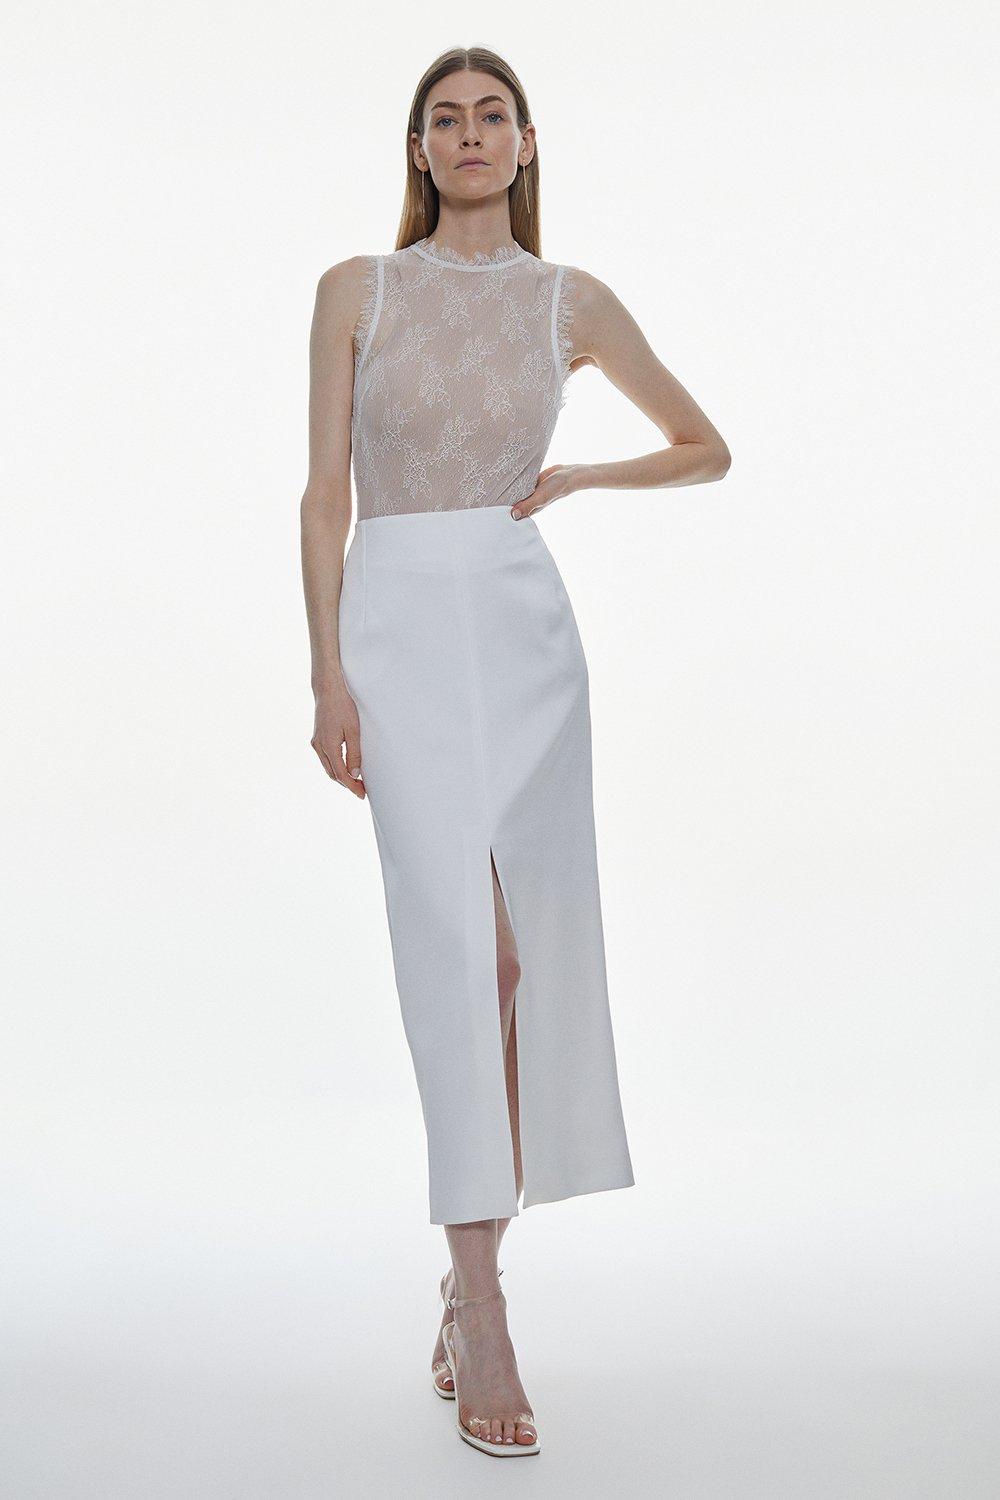 Атласная прямая юбка макси с заниженной талией Karen Millen, белый офисная юбка плотная элегантная юбка теплая универсальная модная трапециевидная макси зимняя длинная юбка с высокой талией